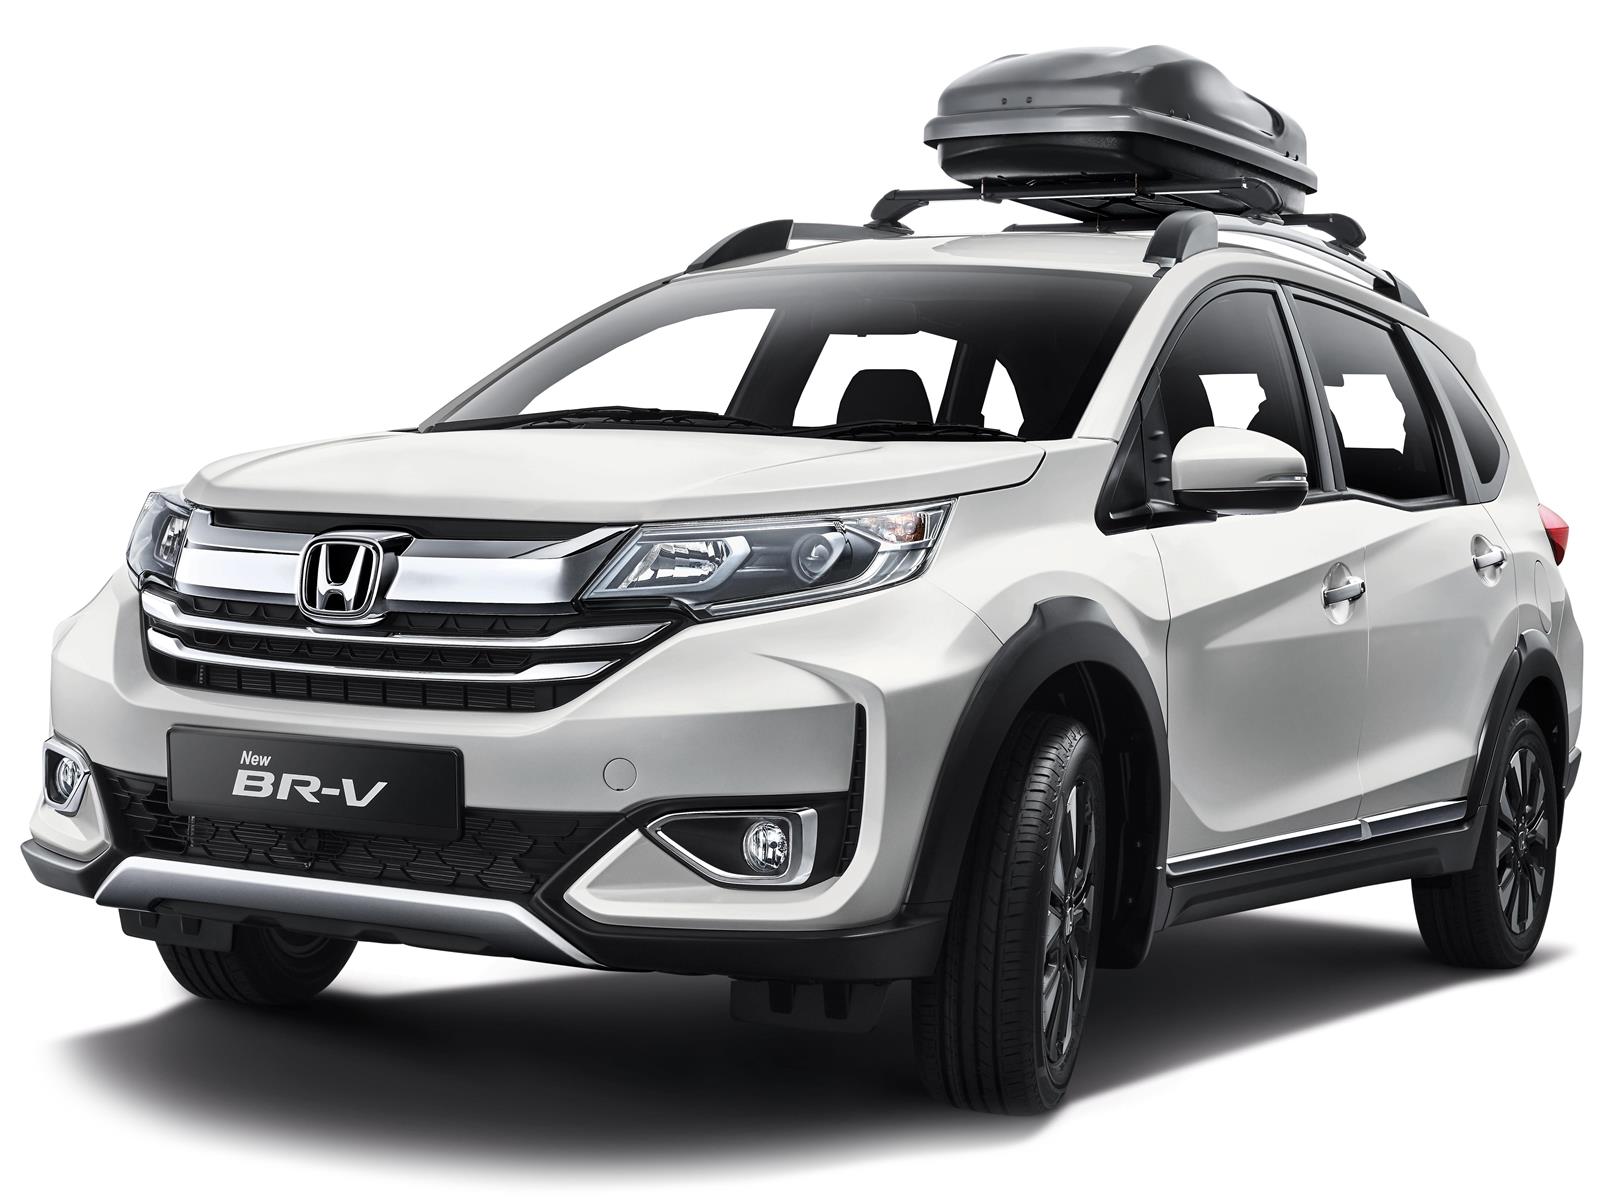 Catálogo autos nuevos minivan de Honda BRV, fabricados en Tailandia